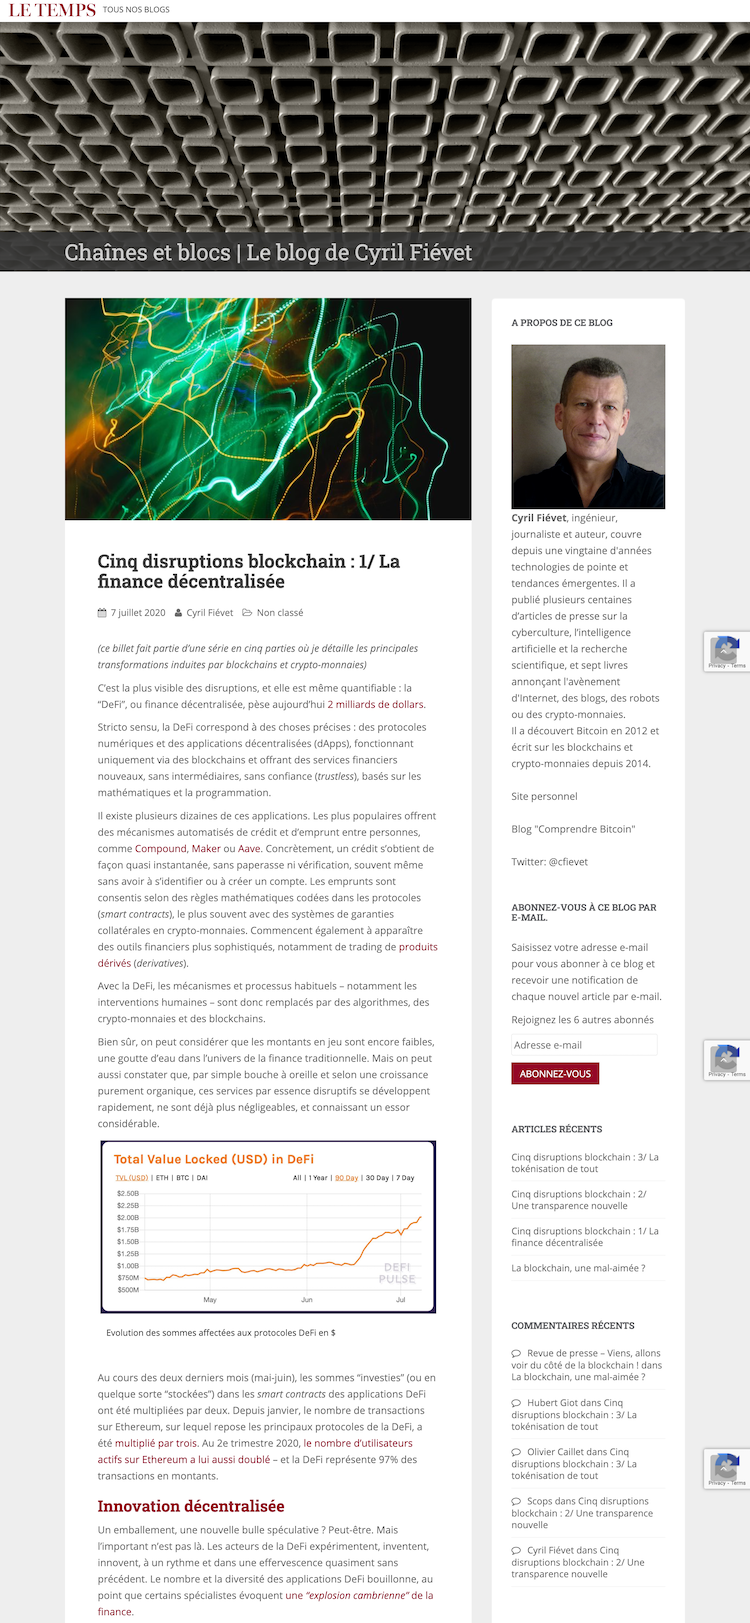 screenshot-blogs.letemps.ch-2020.08.07-10_35_24